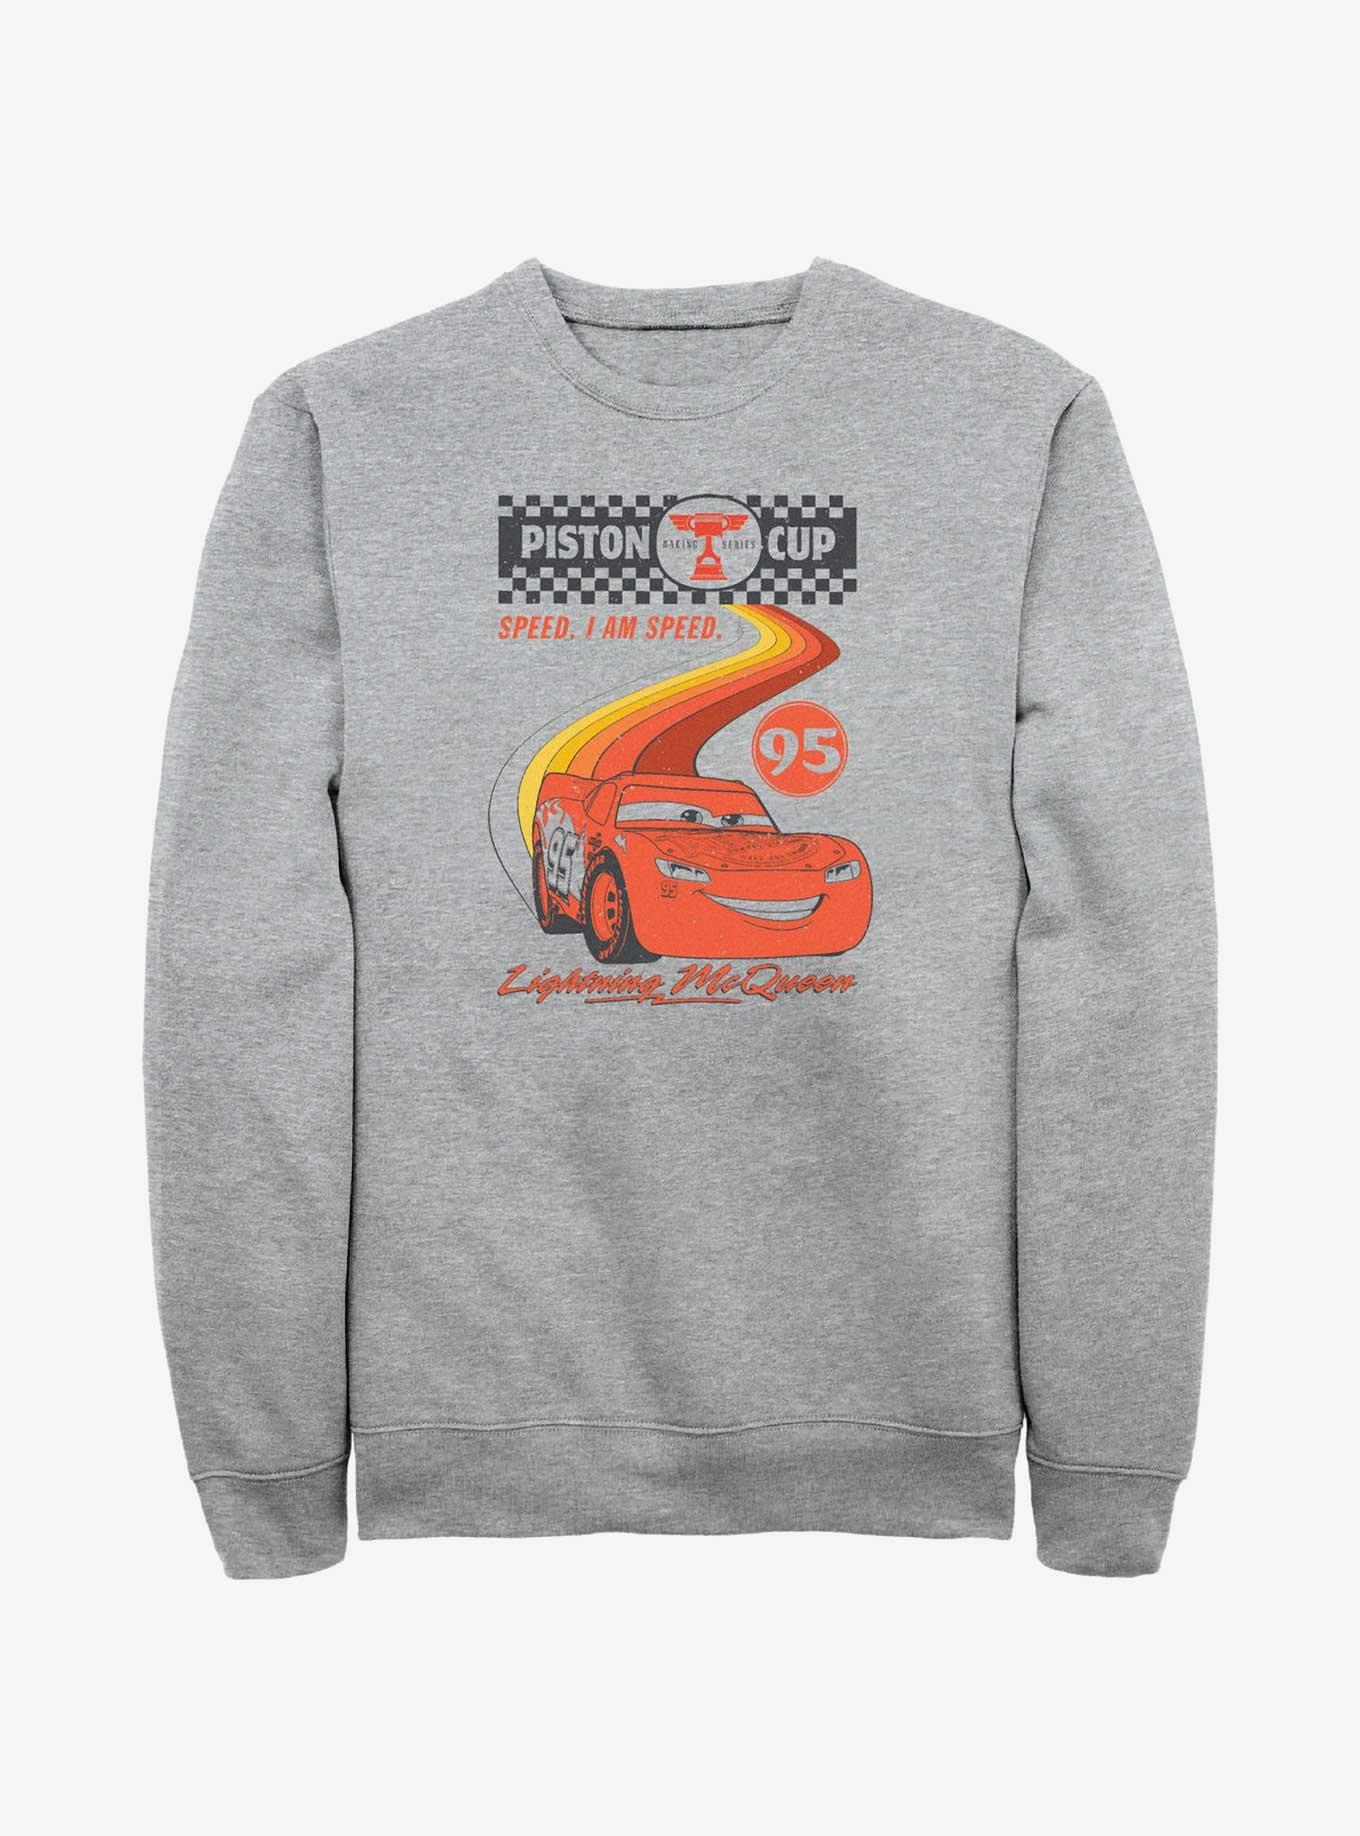 Disney Pixar Cars Retro McQueen Speedway Sweatshirt